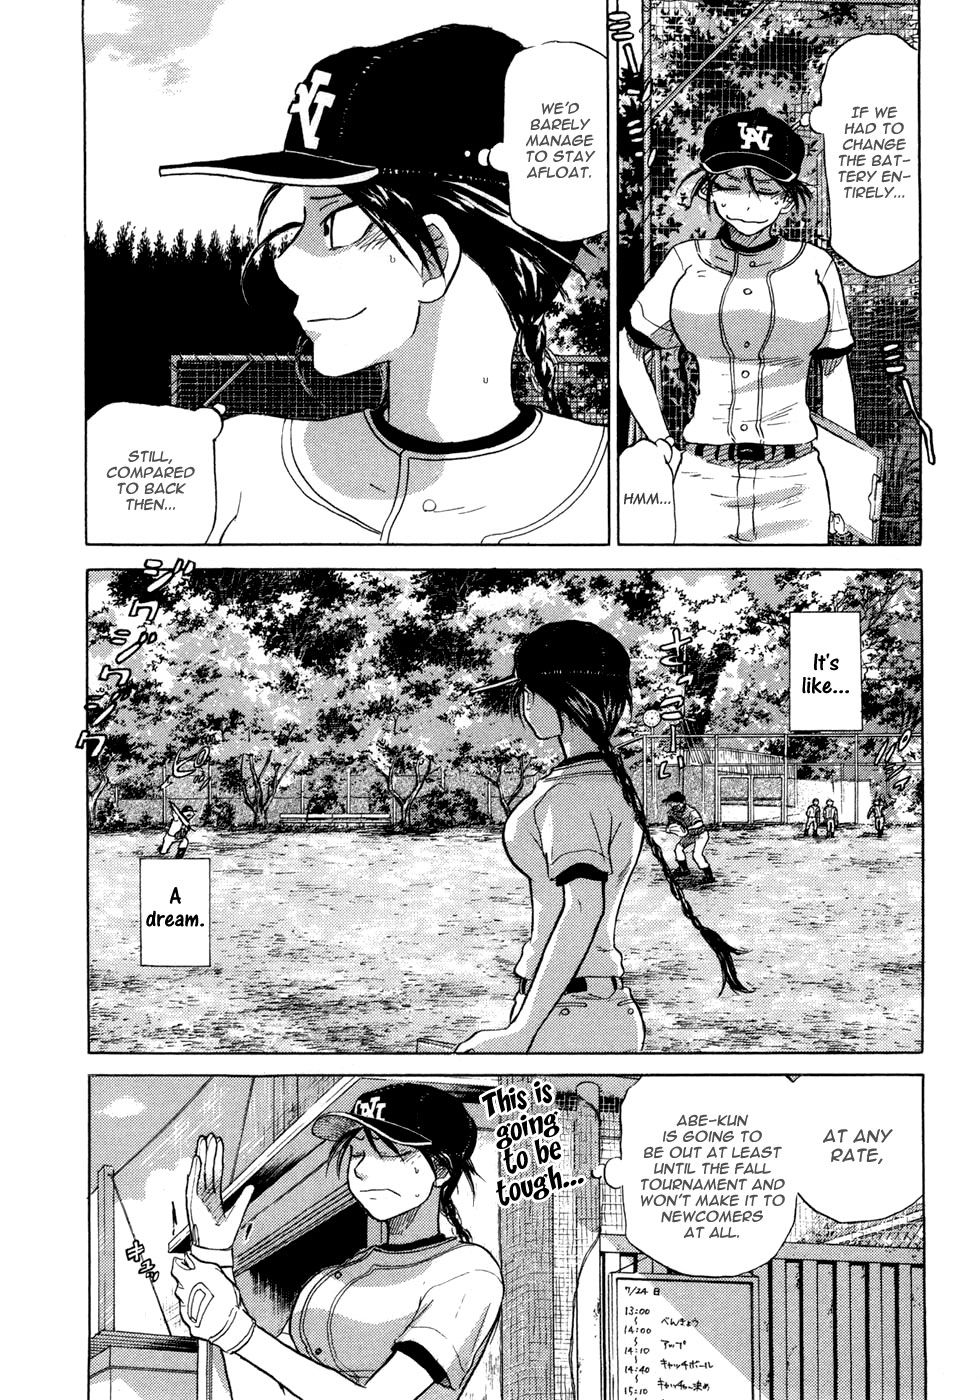 Ookiku Furikabutte - 028b page p_00031